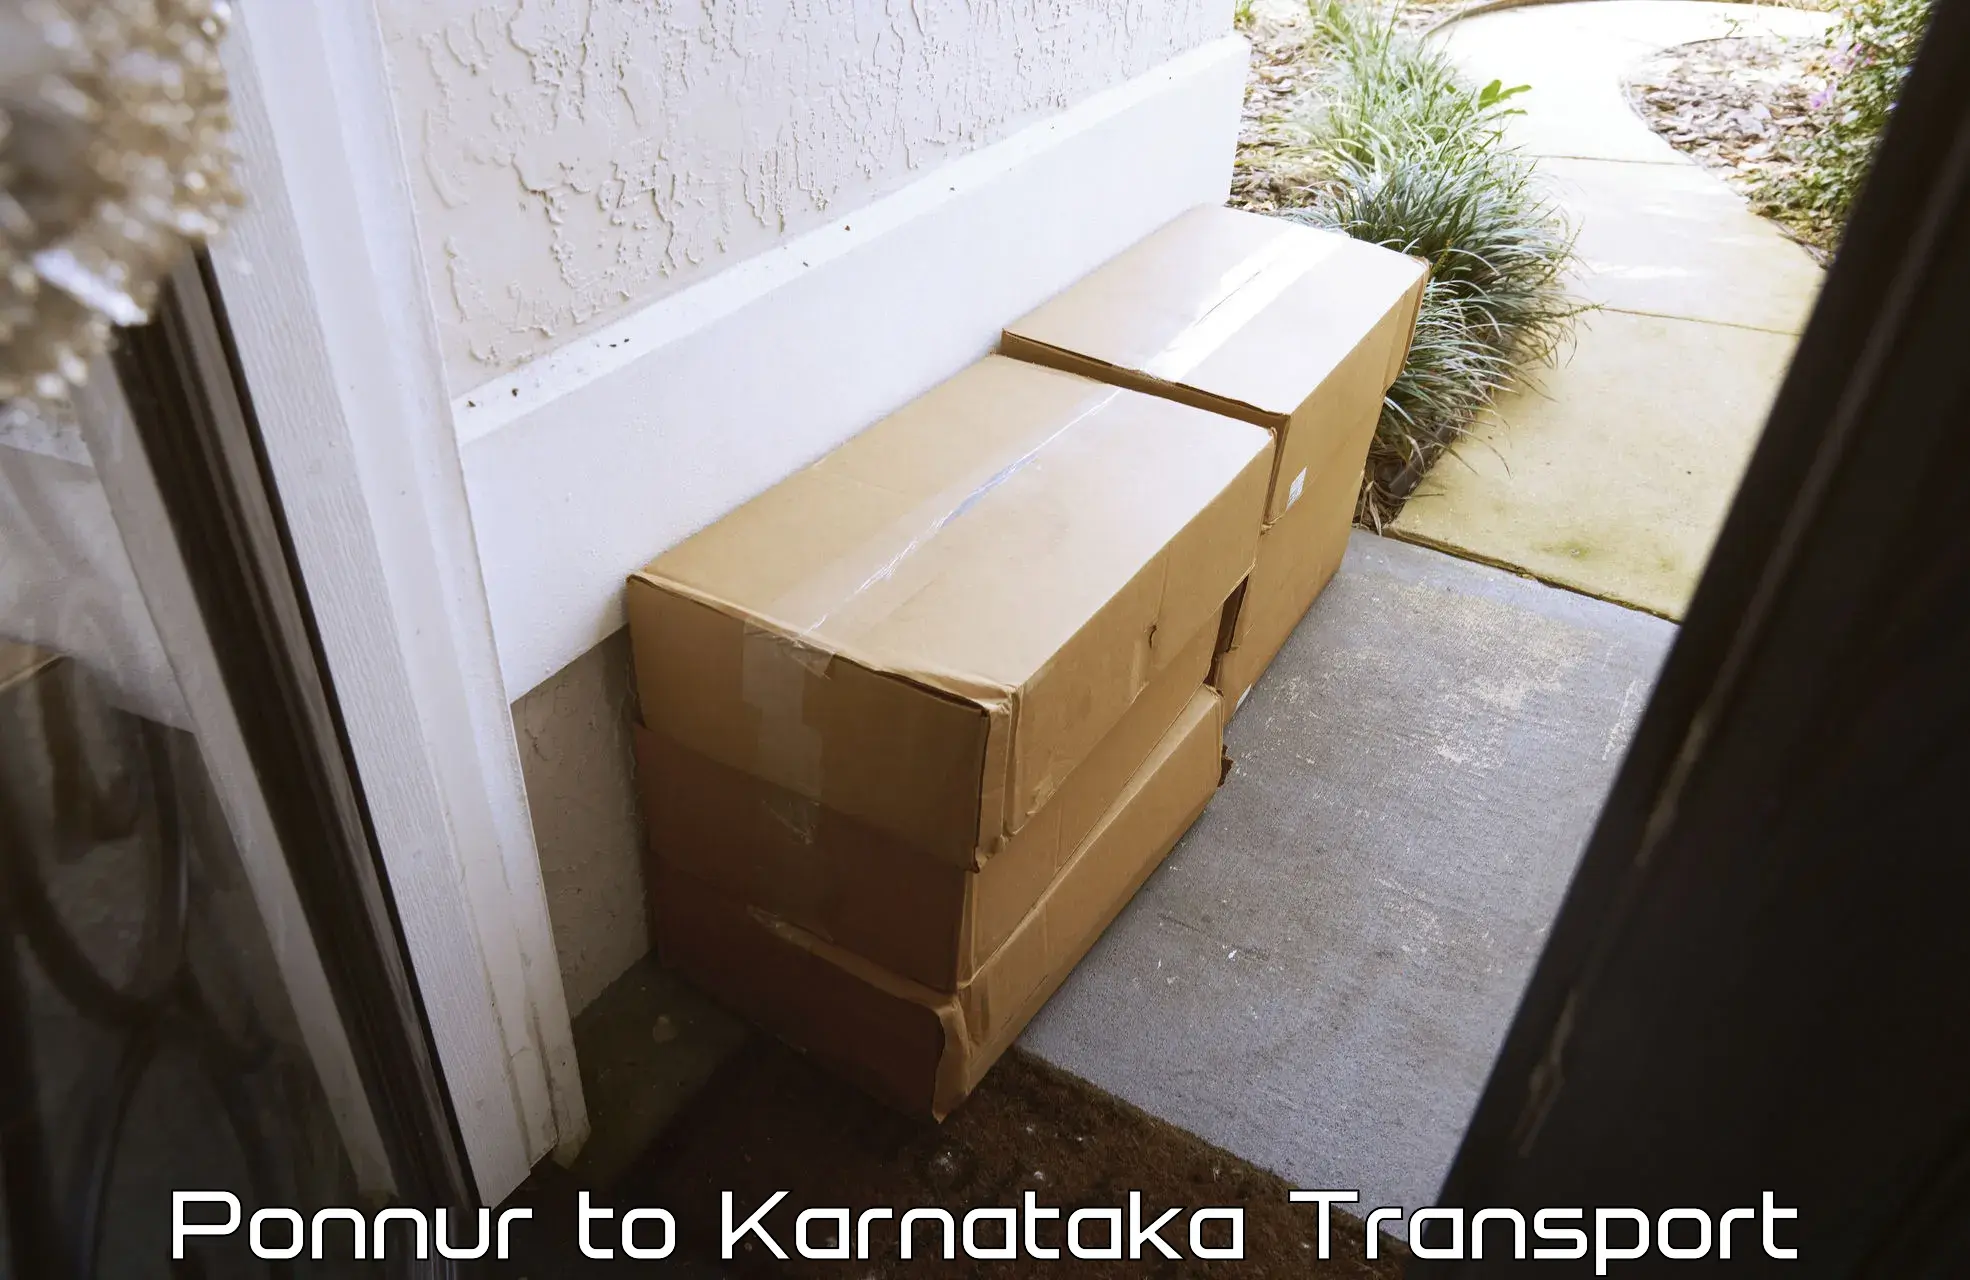 Online transport service Ponnur to Indi